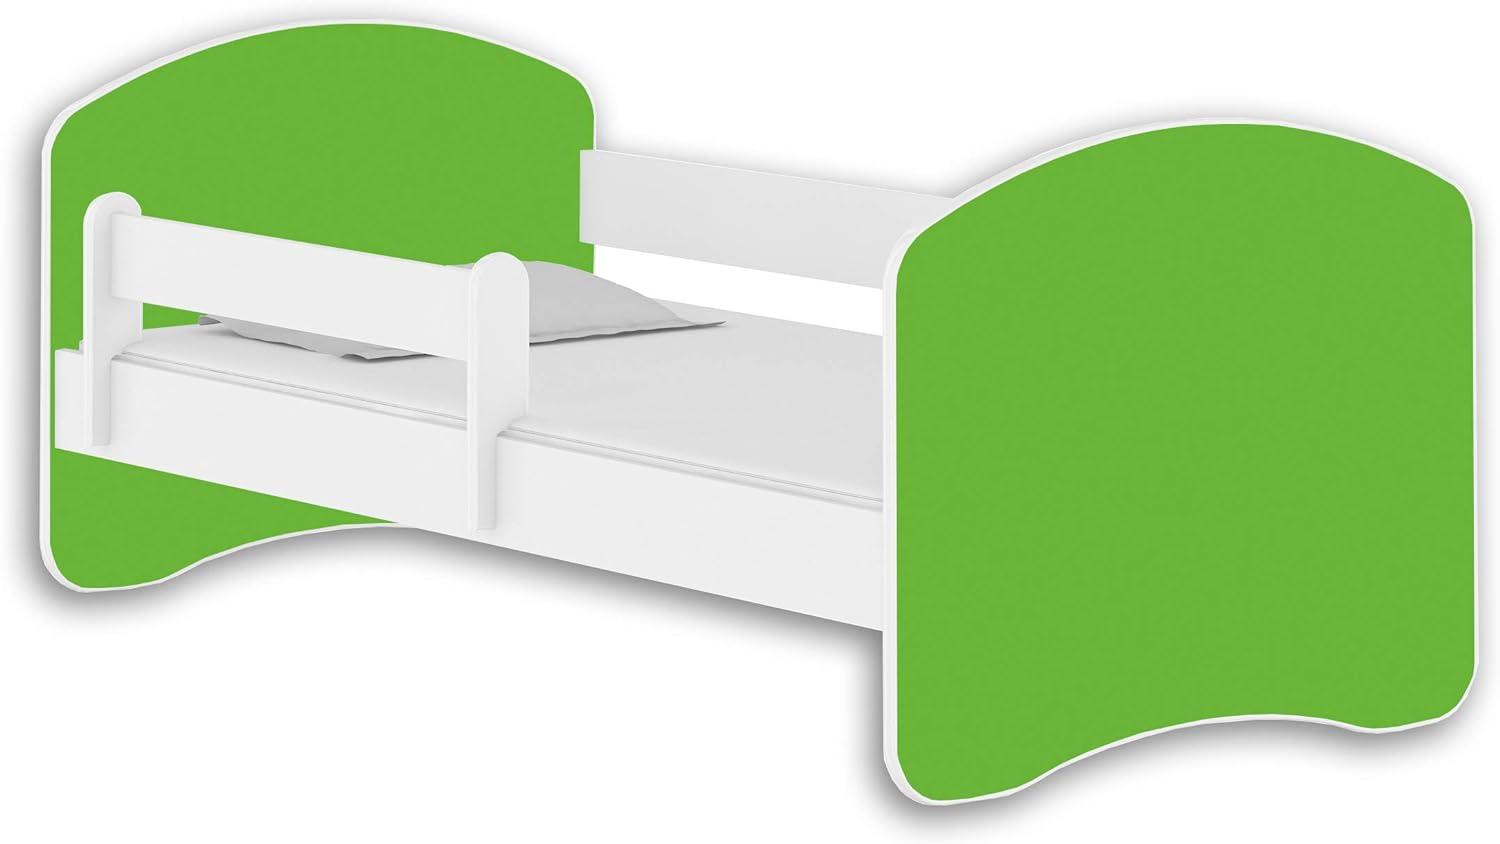 Jugendbett Kinderbett mit einer Schublade mit Rausfallschutz und Matratze Weiß ACMA II 140 160 180 (140x70 cm, Weiß - Grün) Bild 1